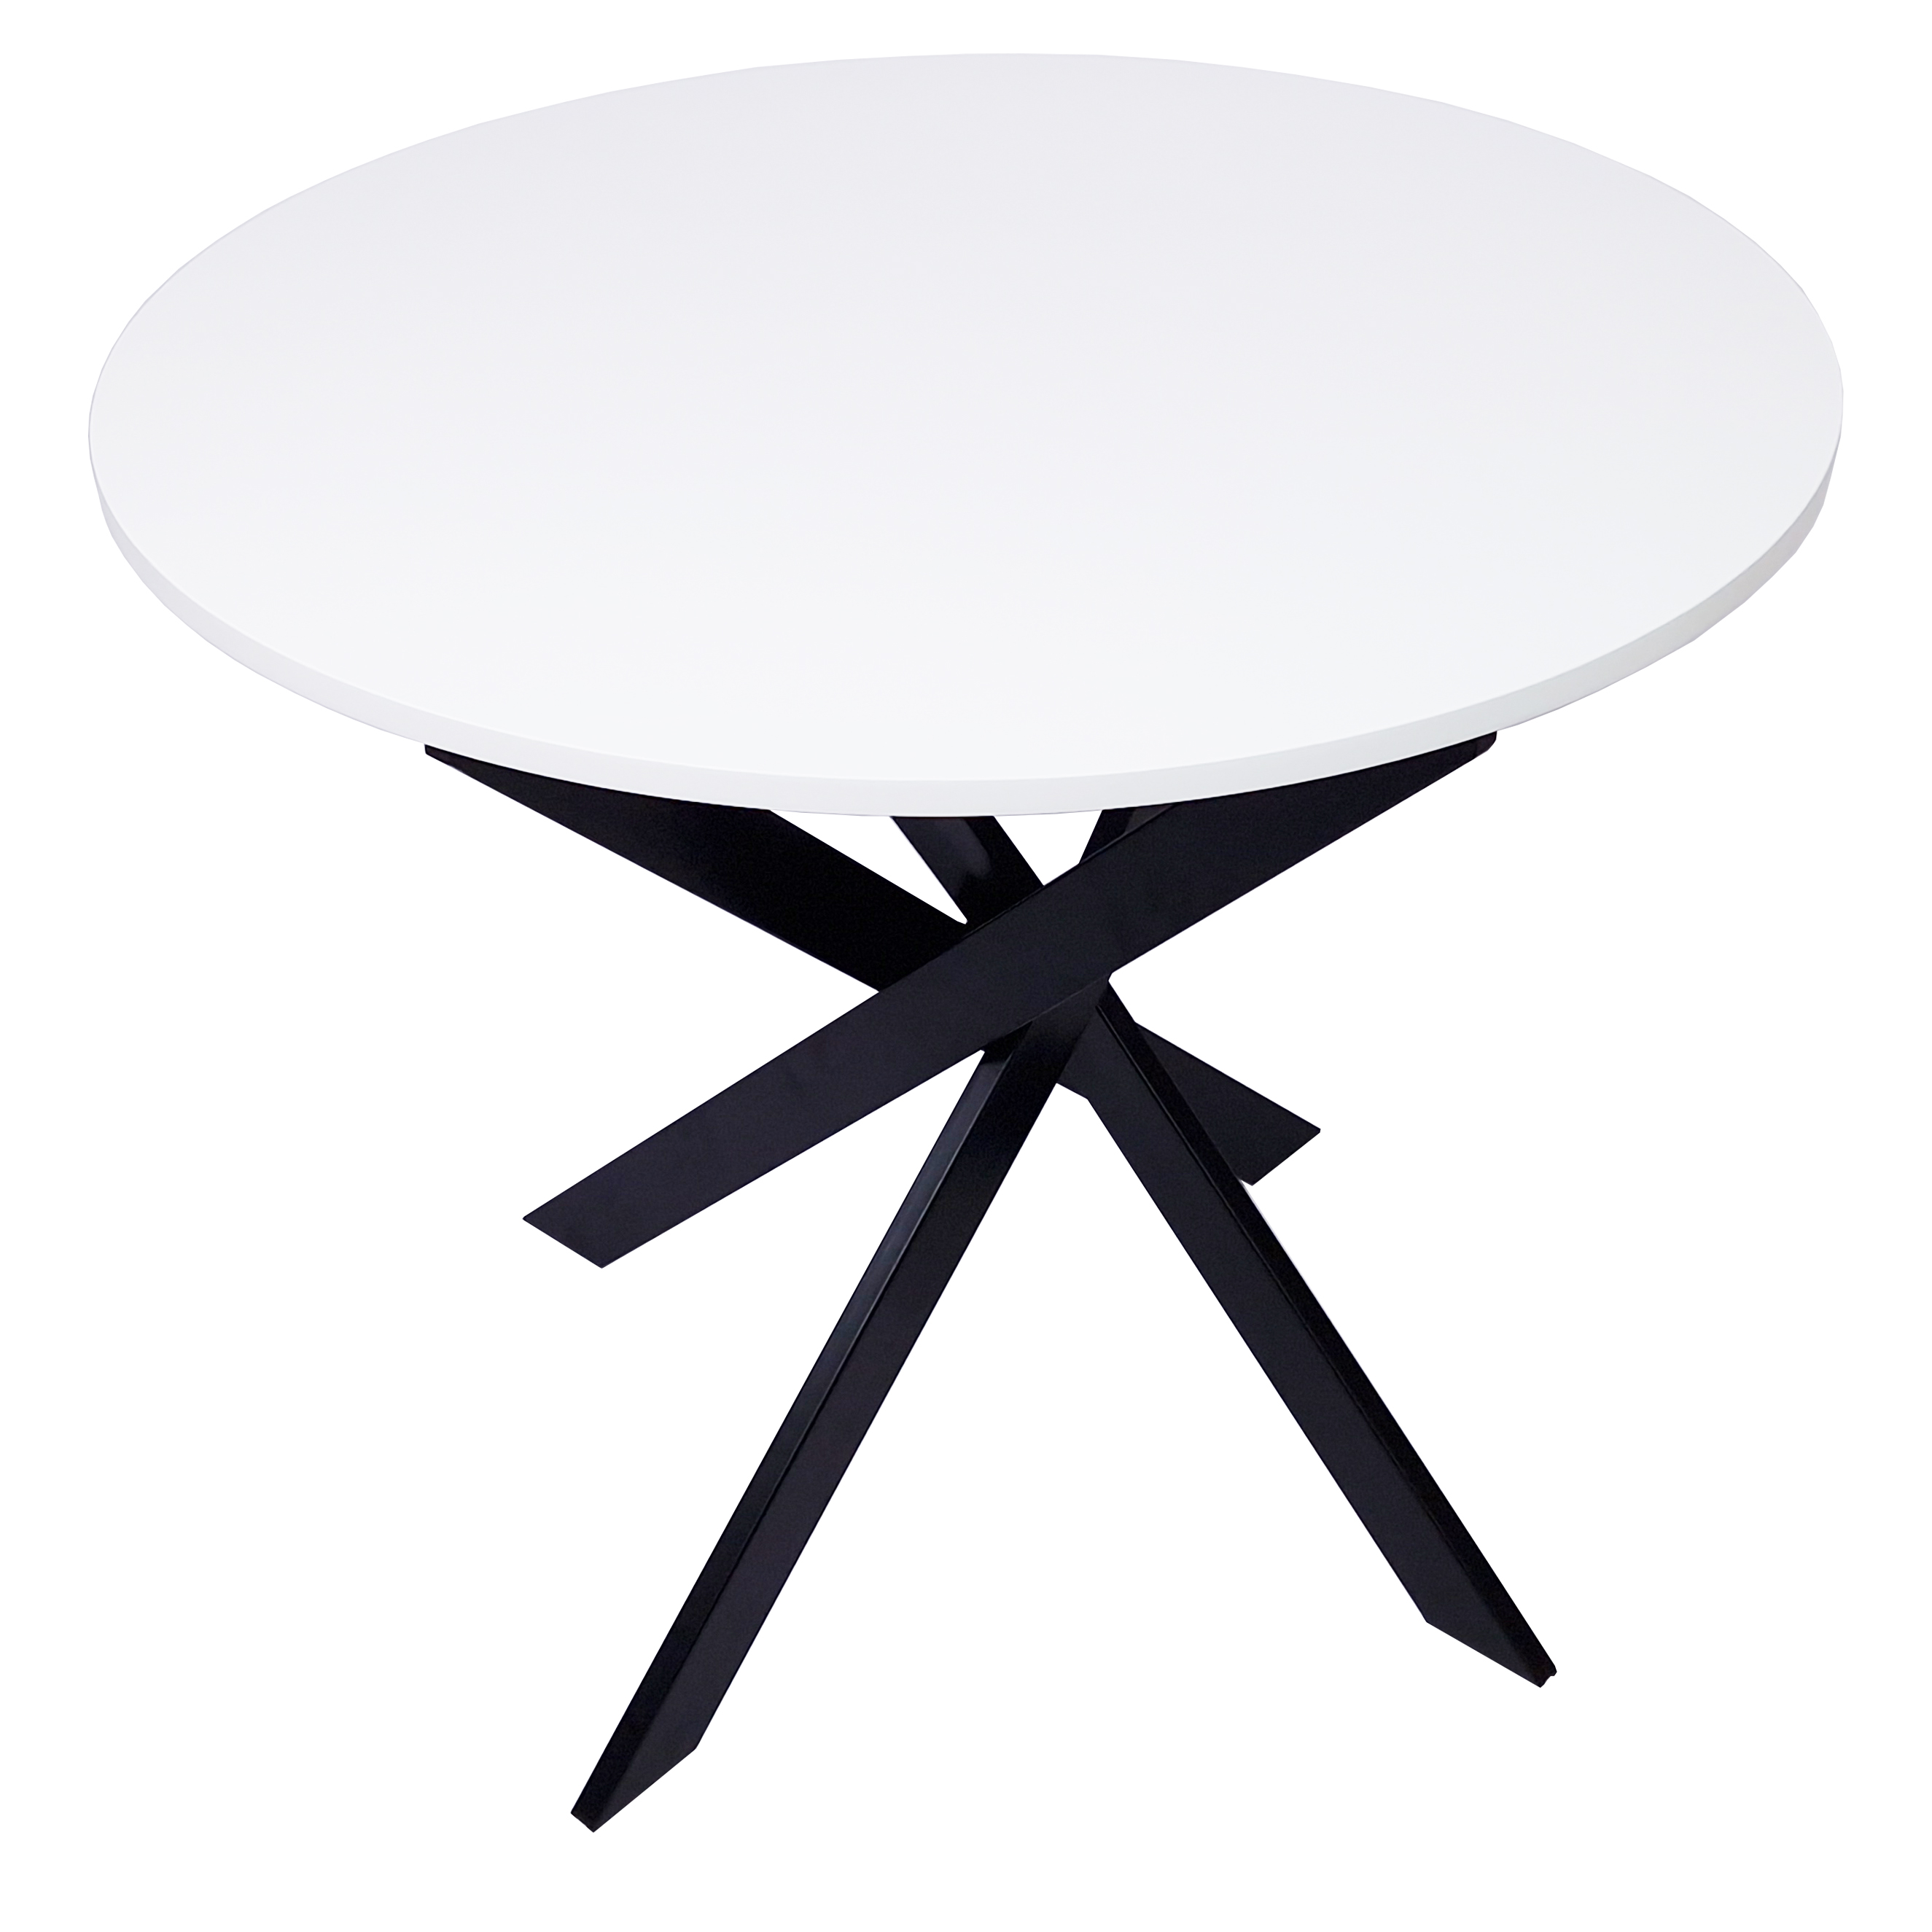 Table à manger ronde Ø90cm fixe couleur blanc